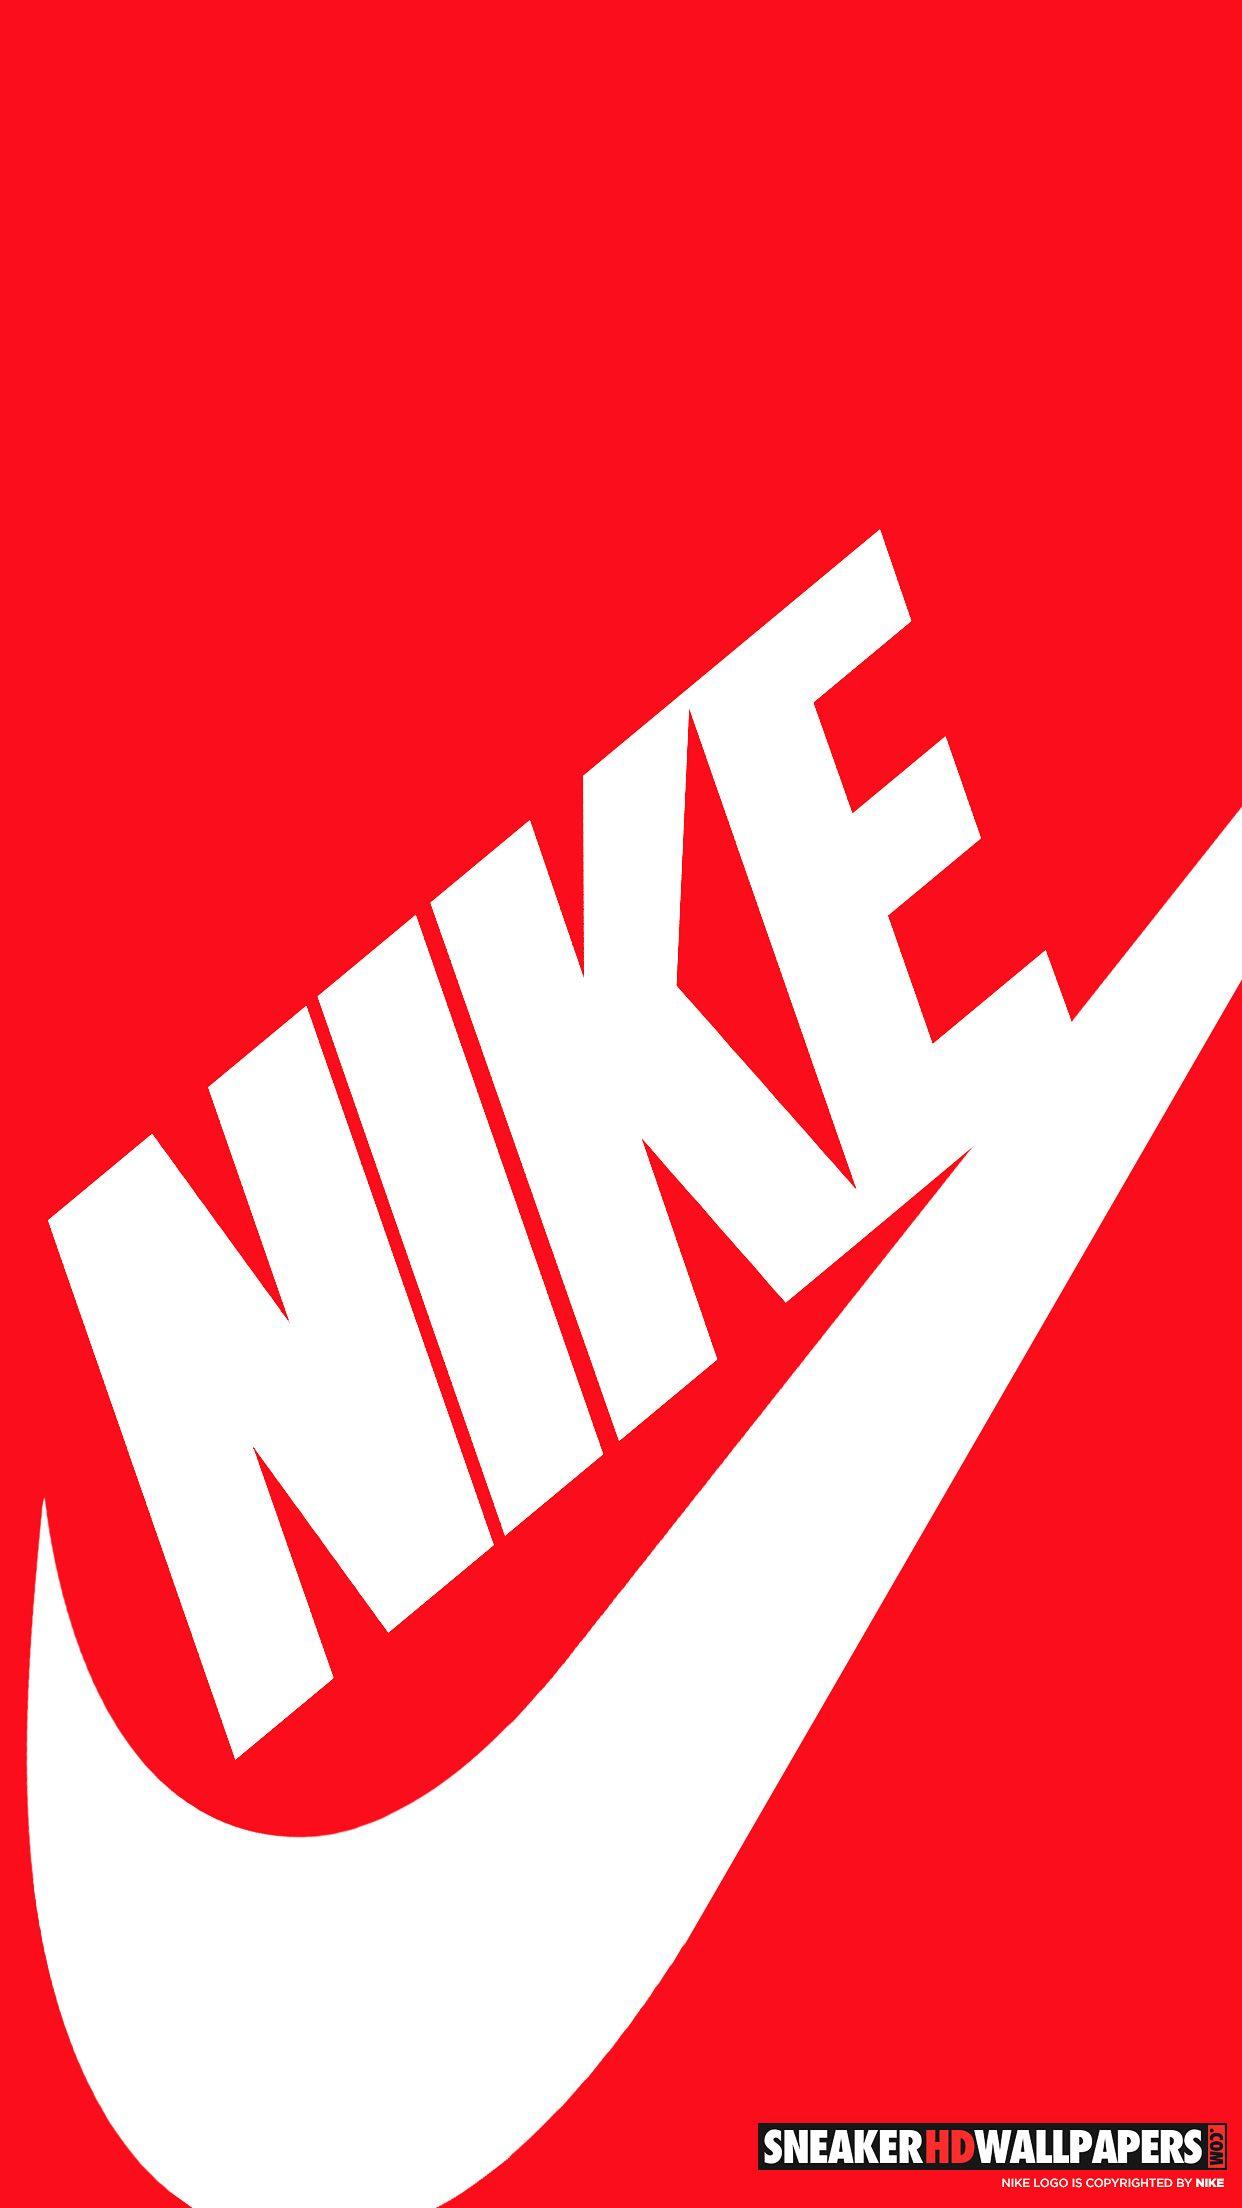 White On Red Nike Logo - Red and white nike Logos